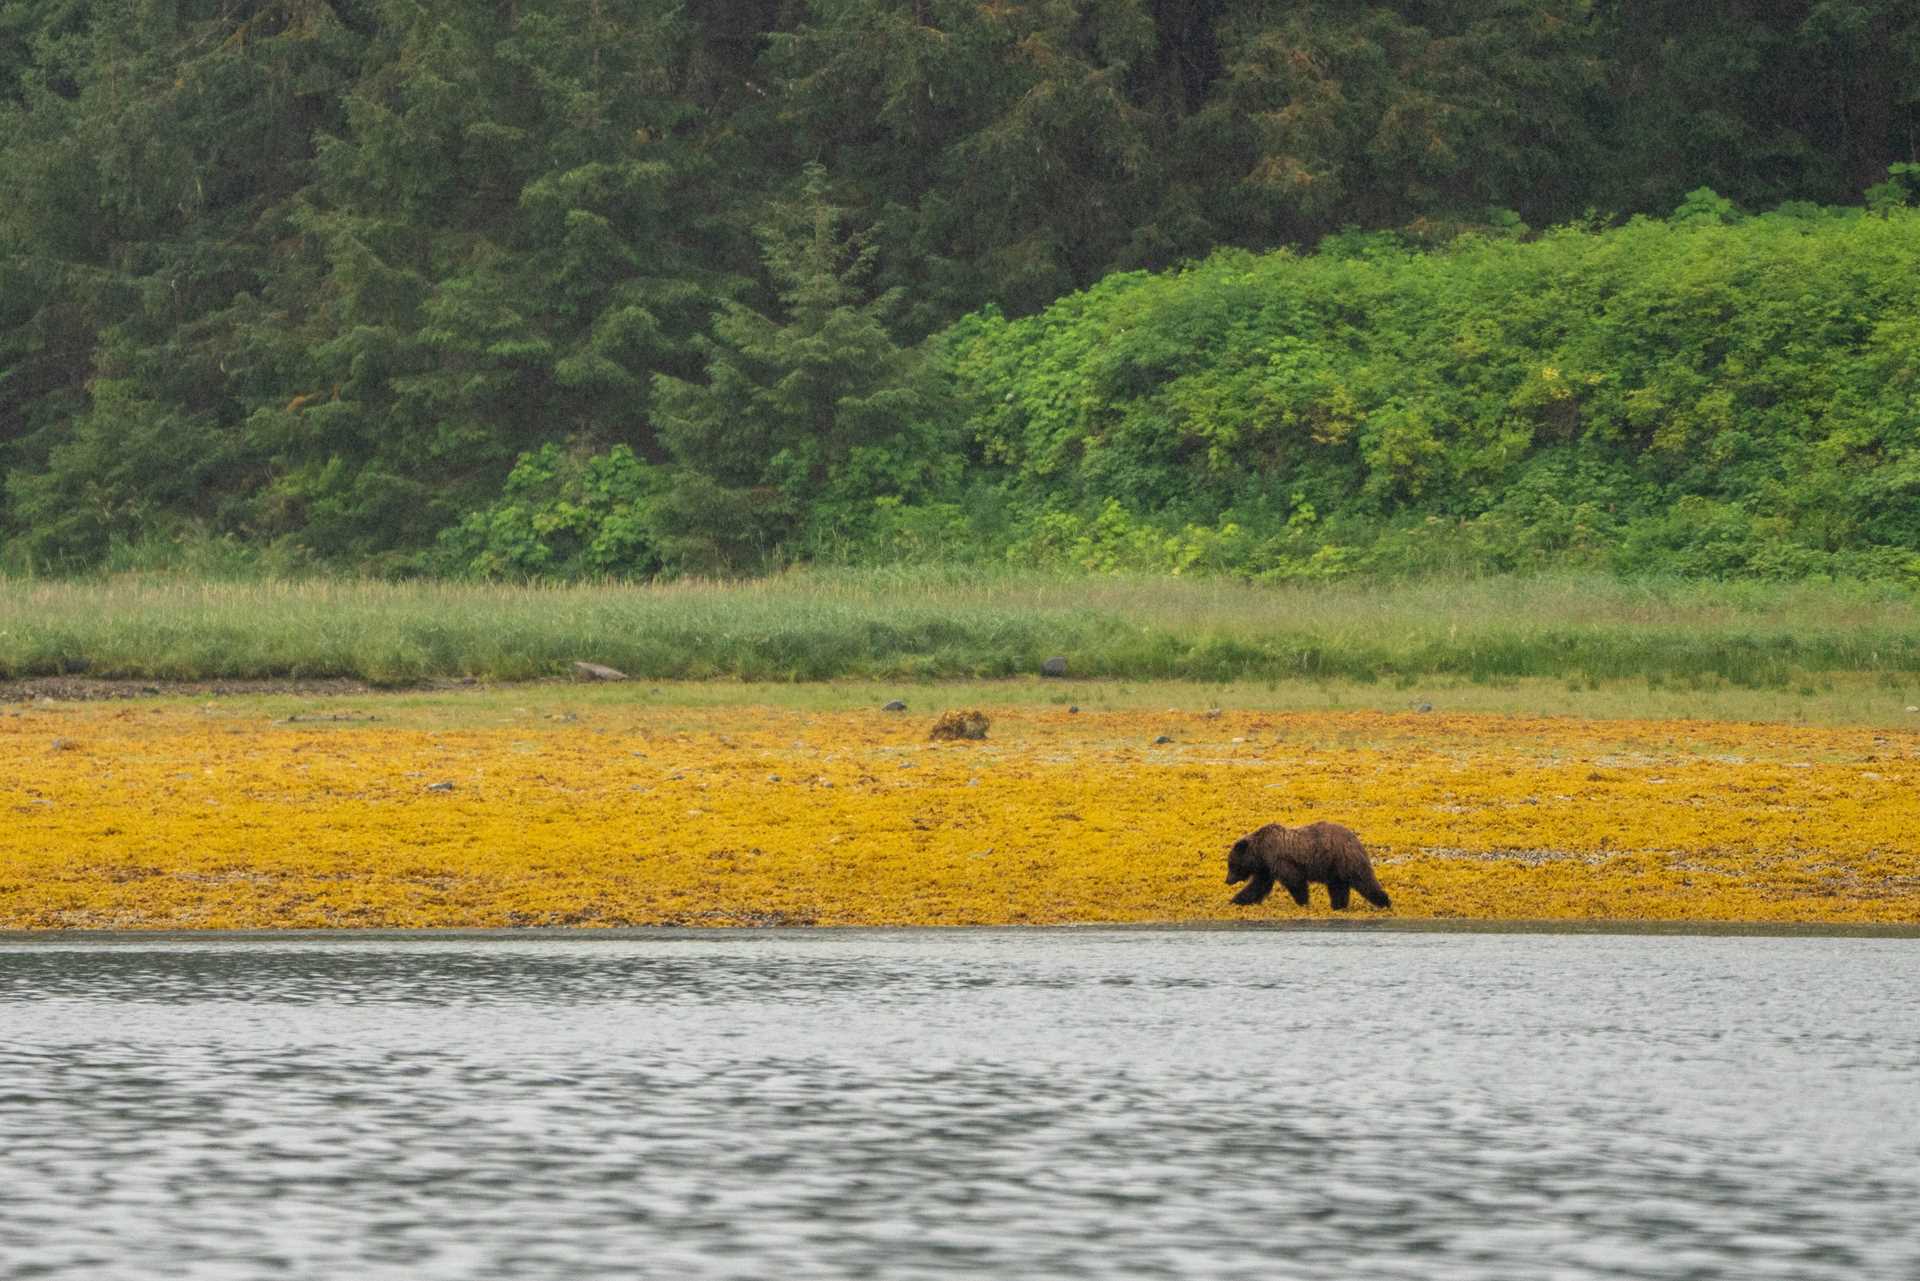 brown bear walking on a yellow field